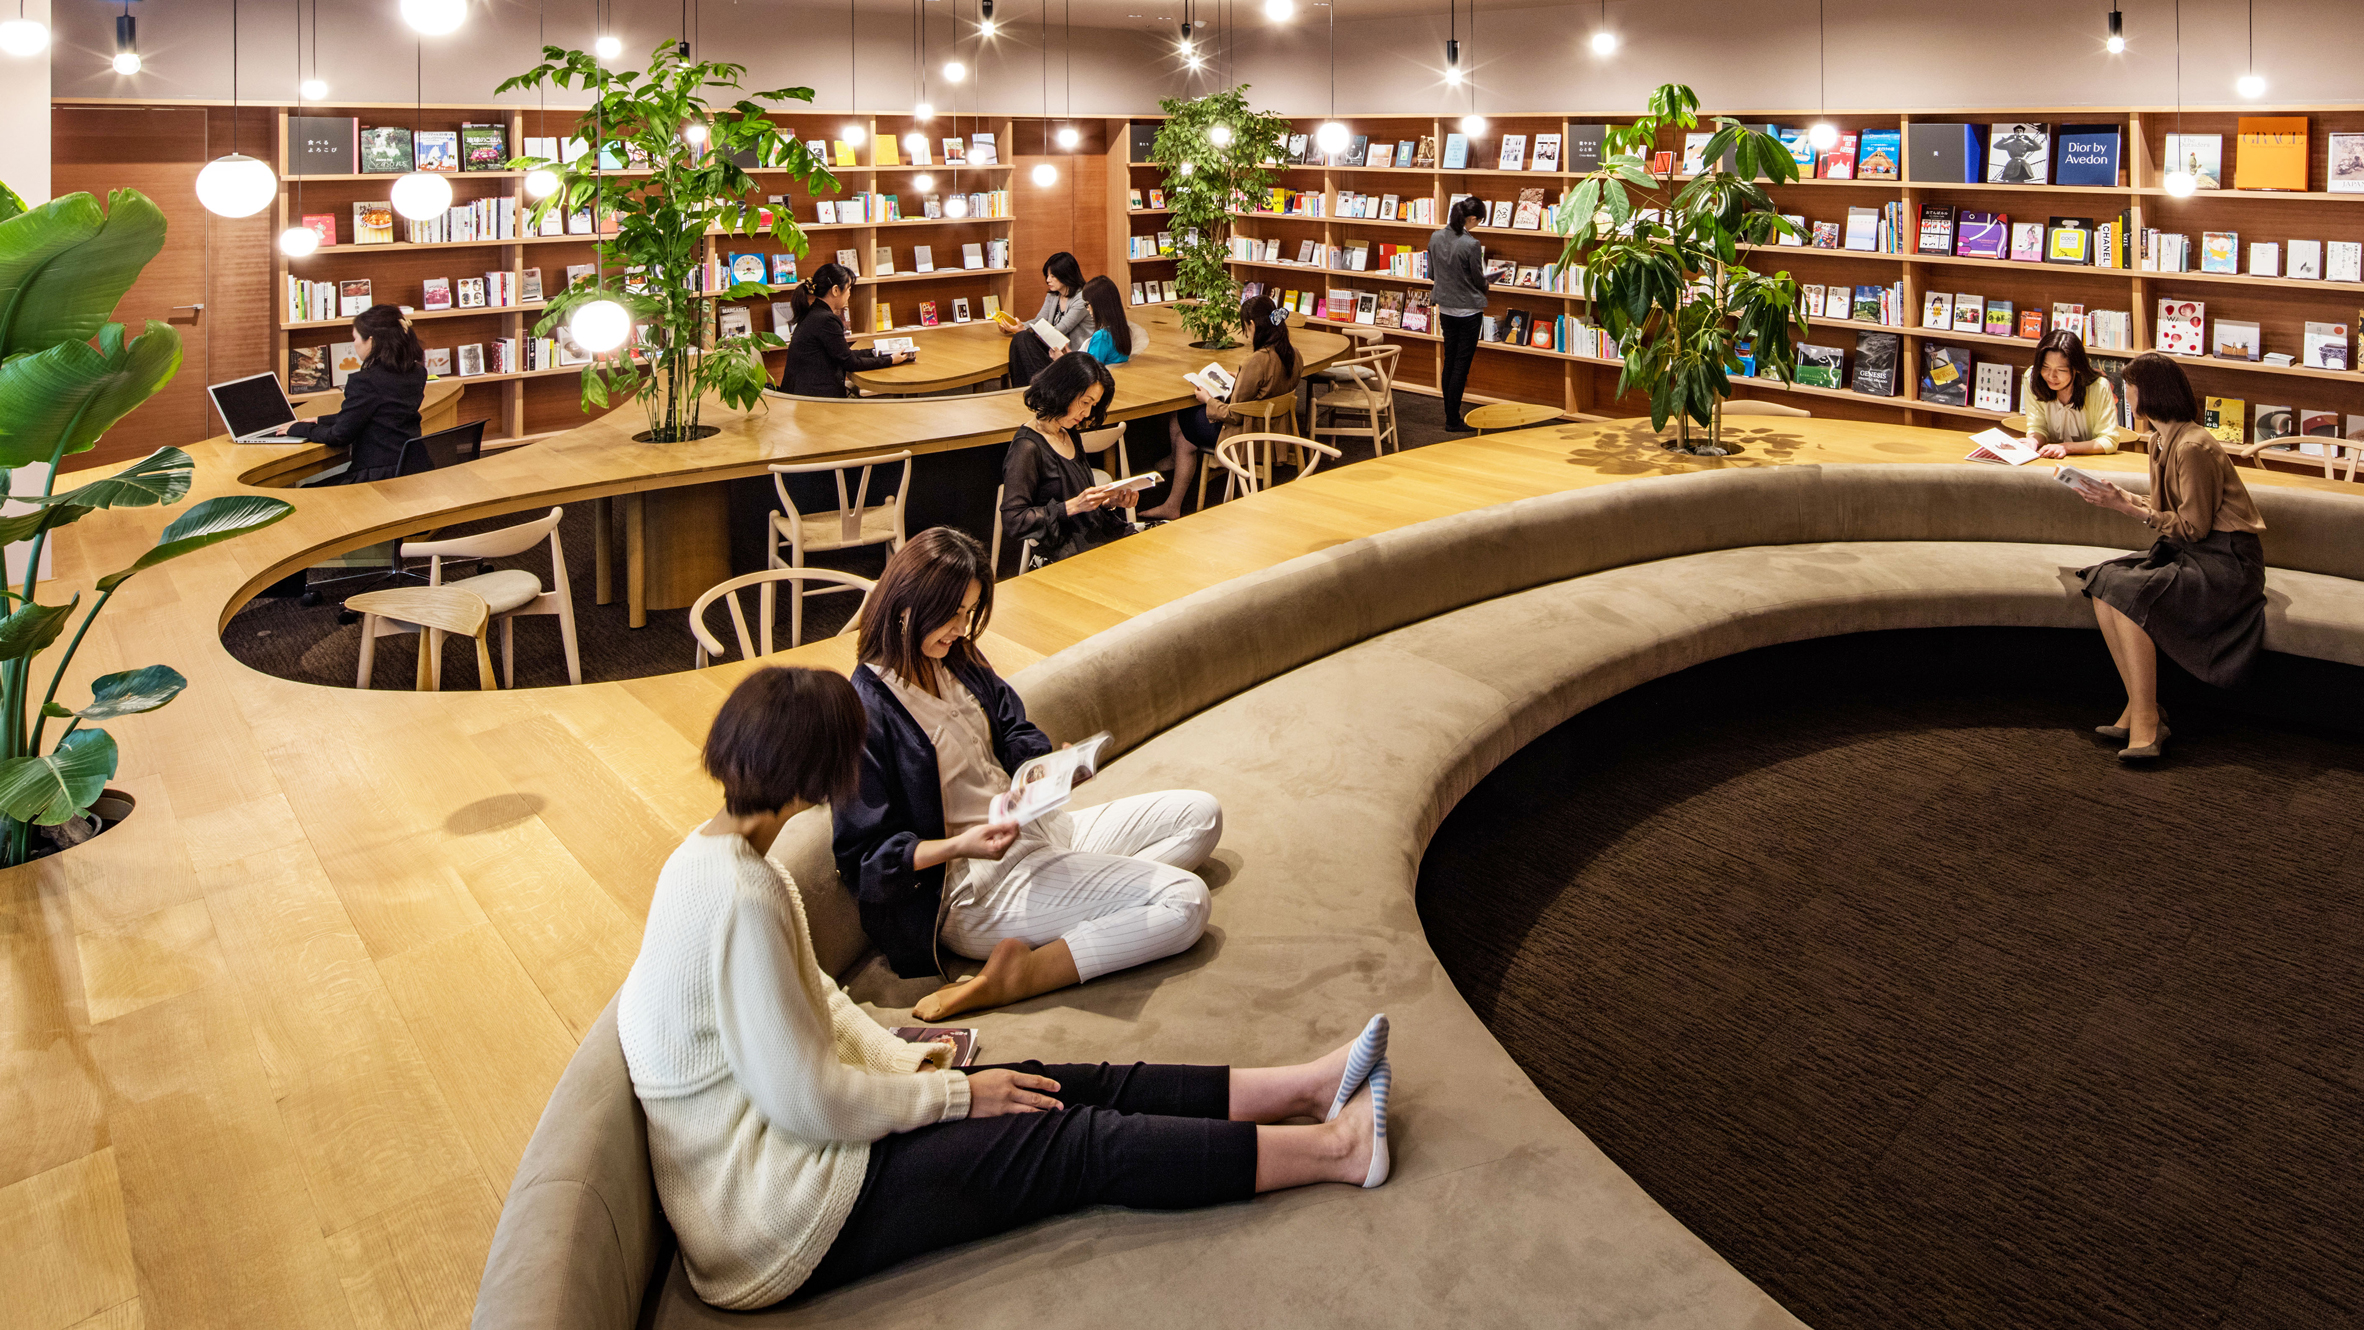 Compiled library. Библиотека Японии читальный зал. Современная библиотека. Интерьер читального зала библиотеки. Интерьер современной библиотеки.